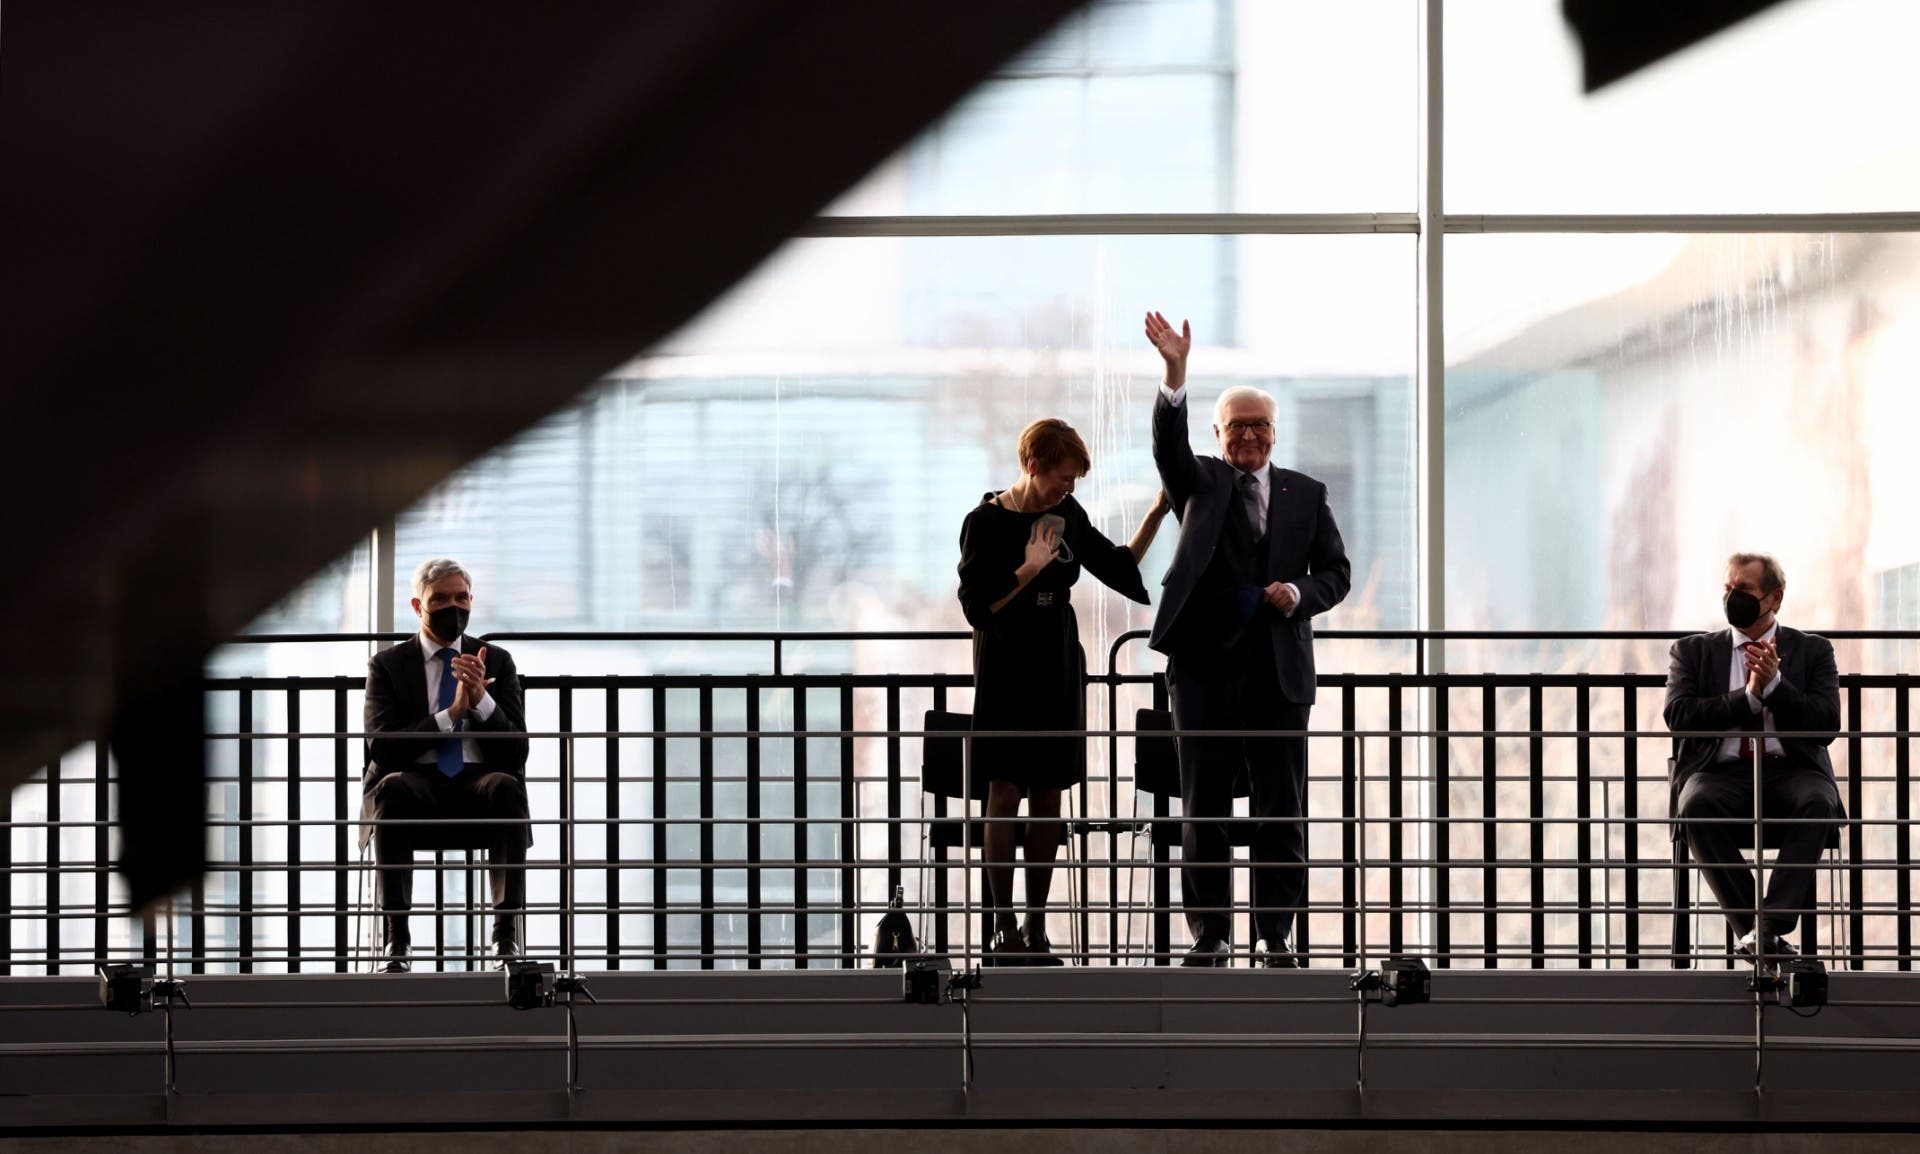  الرئيس الألماني فرانك فالتر شتاينماير وزوجته يلوح للحاضرين بعد الاعلان عن اعادة انتخابه - فرانس برس